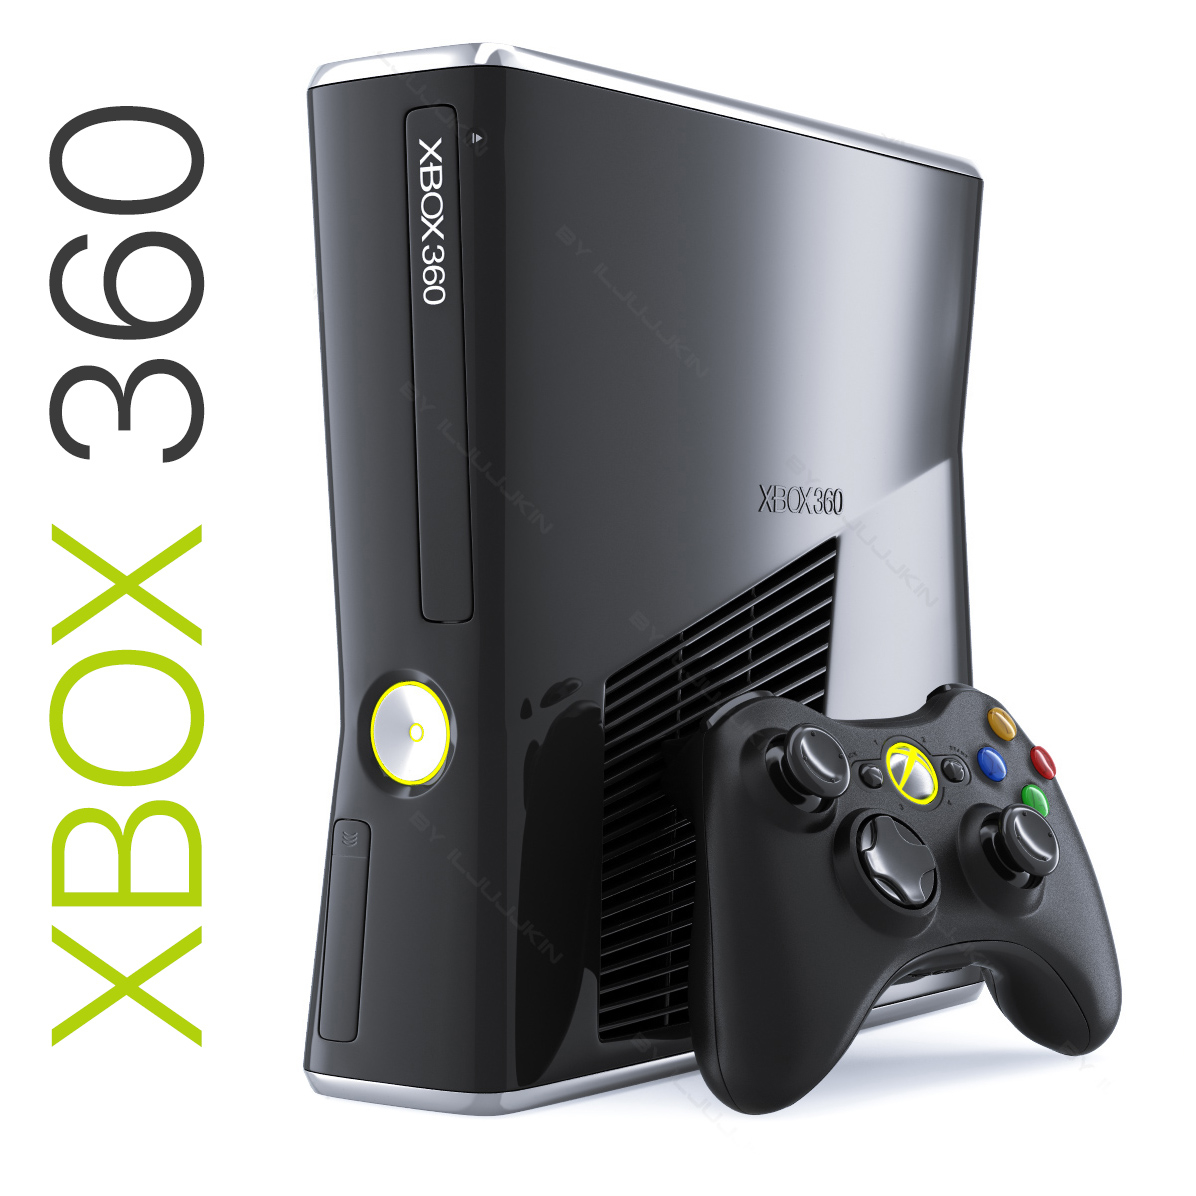 Приставка хбокс 360. Xbox 360 Slim. Приставка Xbox 360 s. Xbox 360 Slim игровая приставка. Microsoft Xbox 360 Slim.